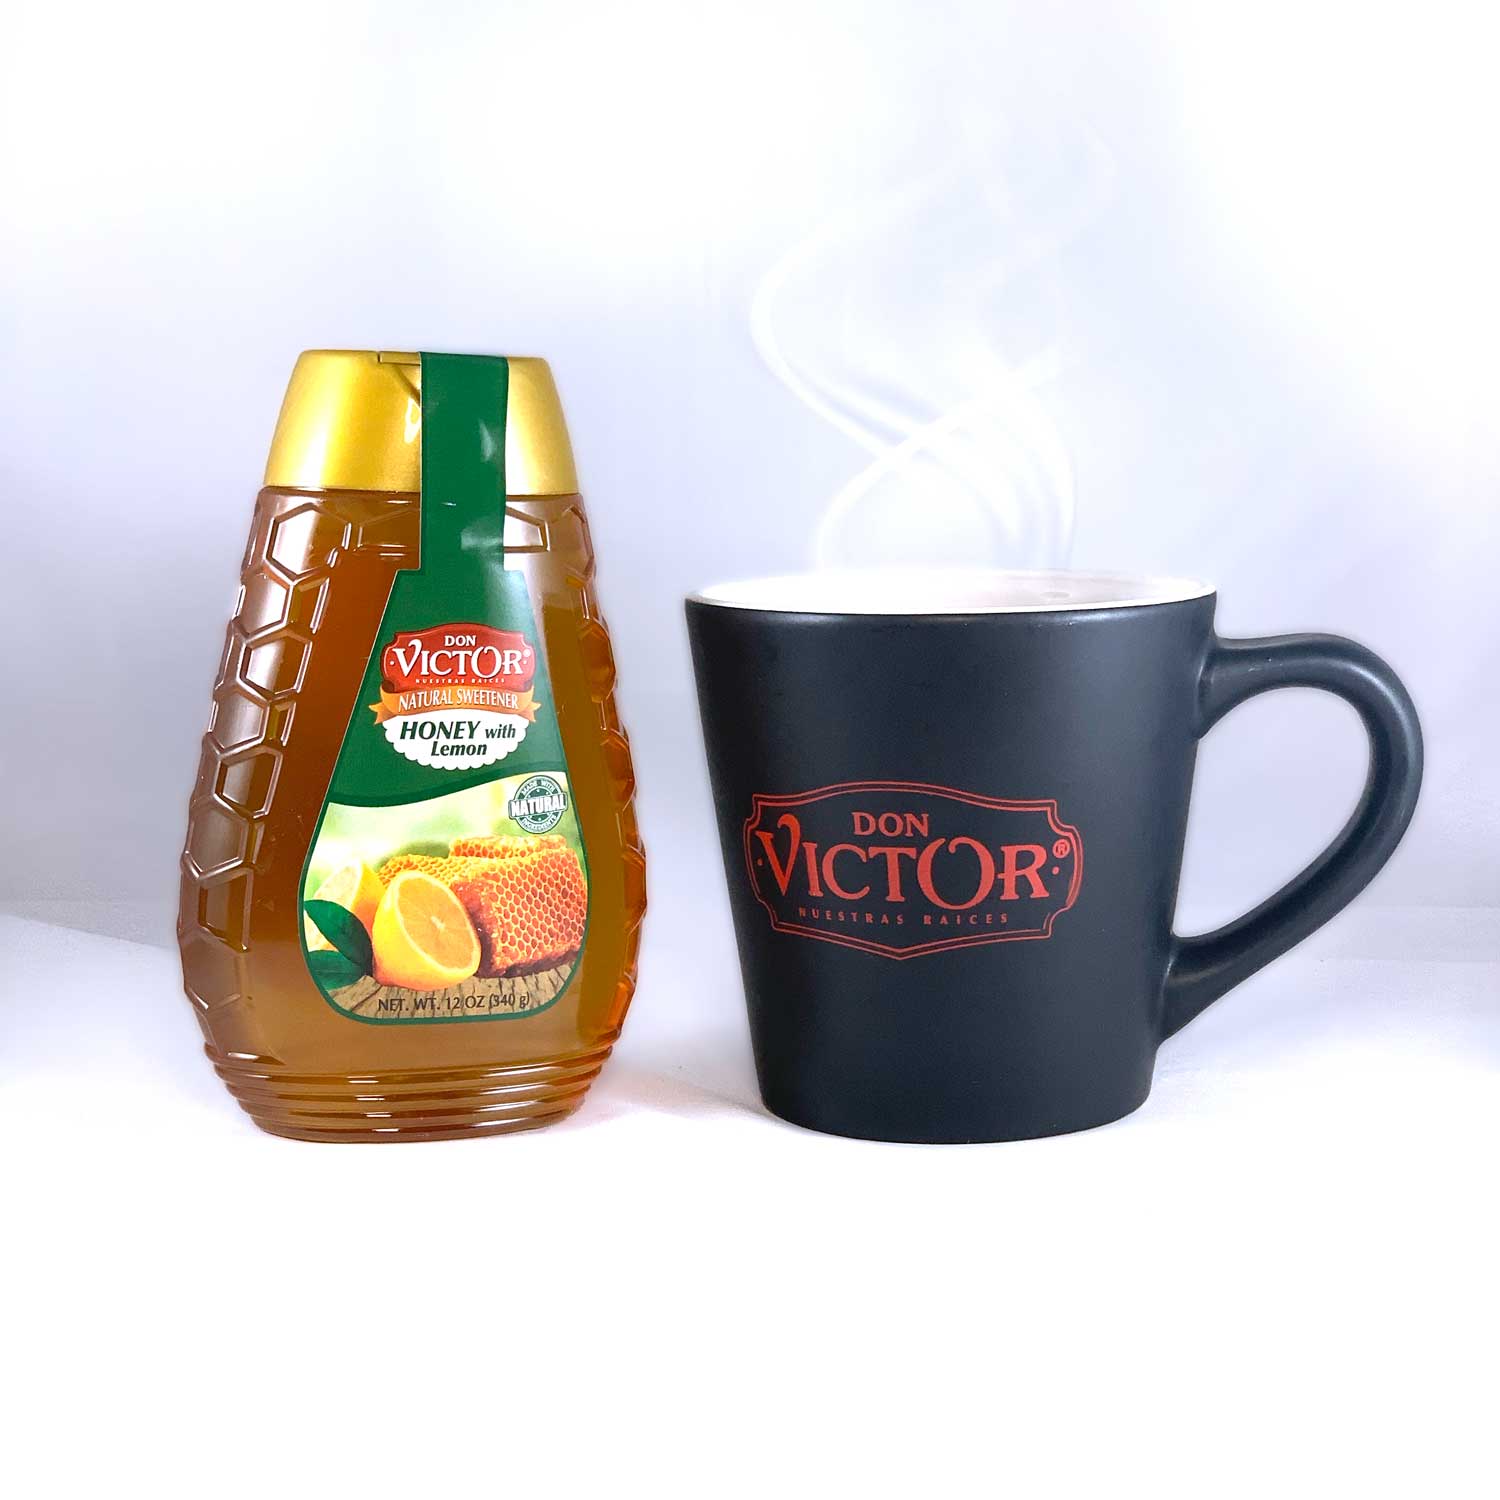 Bottle of Don Victor natural lemon flavored honey beside a mug of hot lemon honey tea.